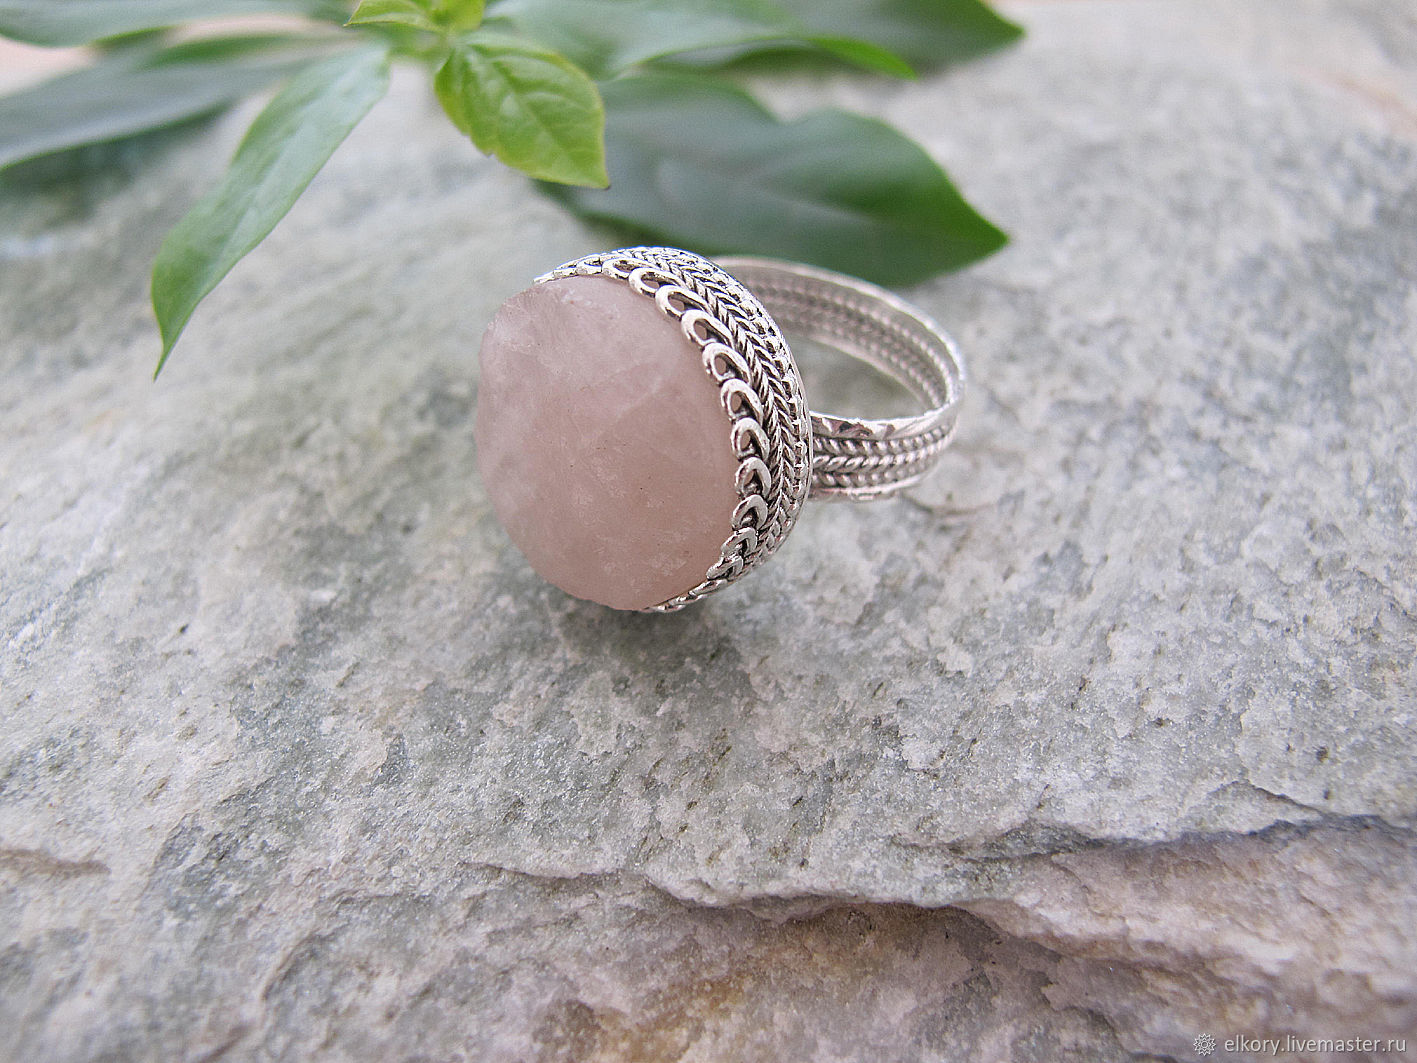 Кольцо серебро розовый. 33357- Комплект Caramel из серебра с розовым кварцем - 3 изделия. Кольцо 1972 серебряное с розовым кварцем. Кольцо с розовым кварцем в серебре.